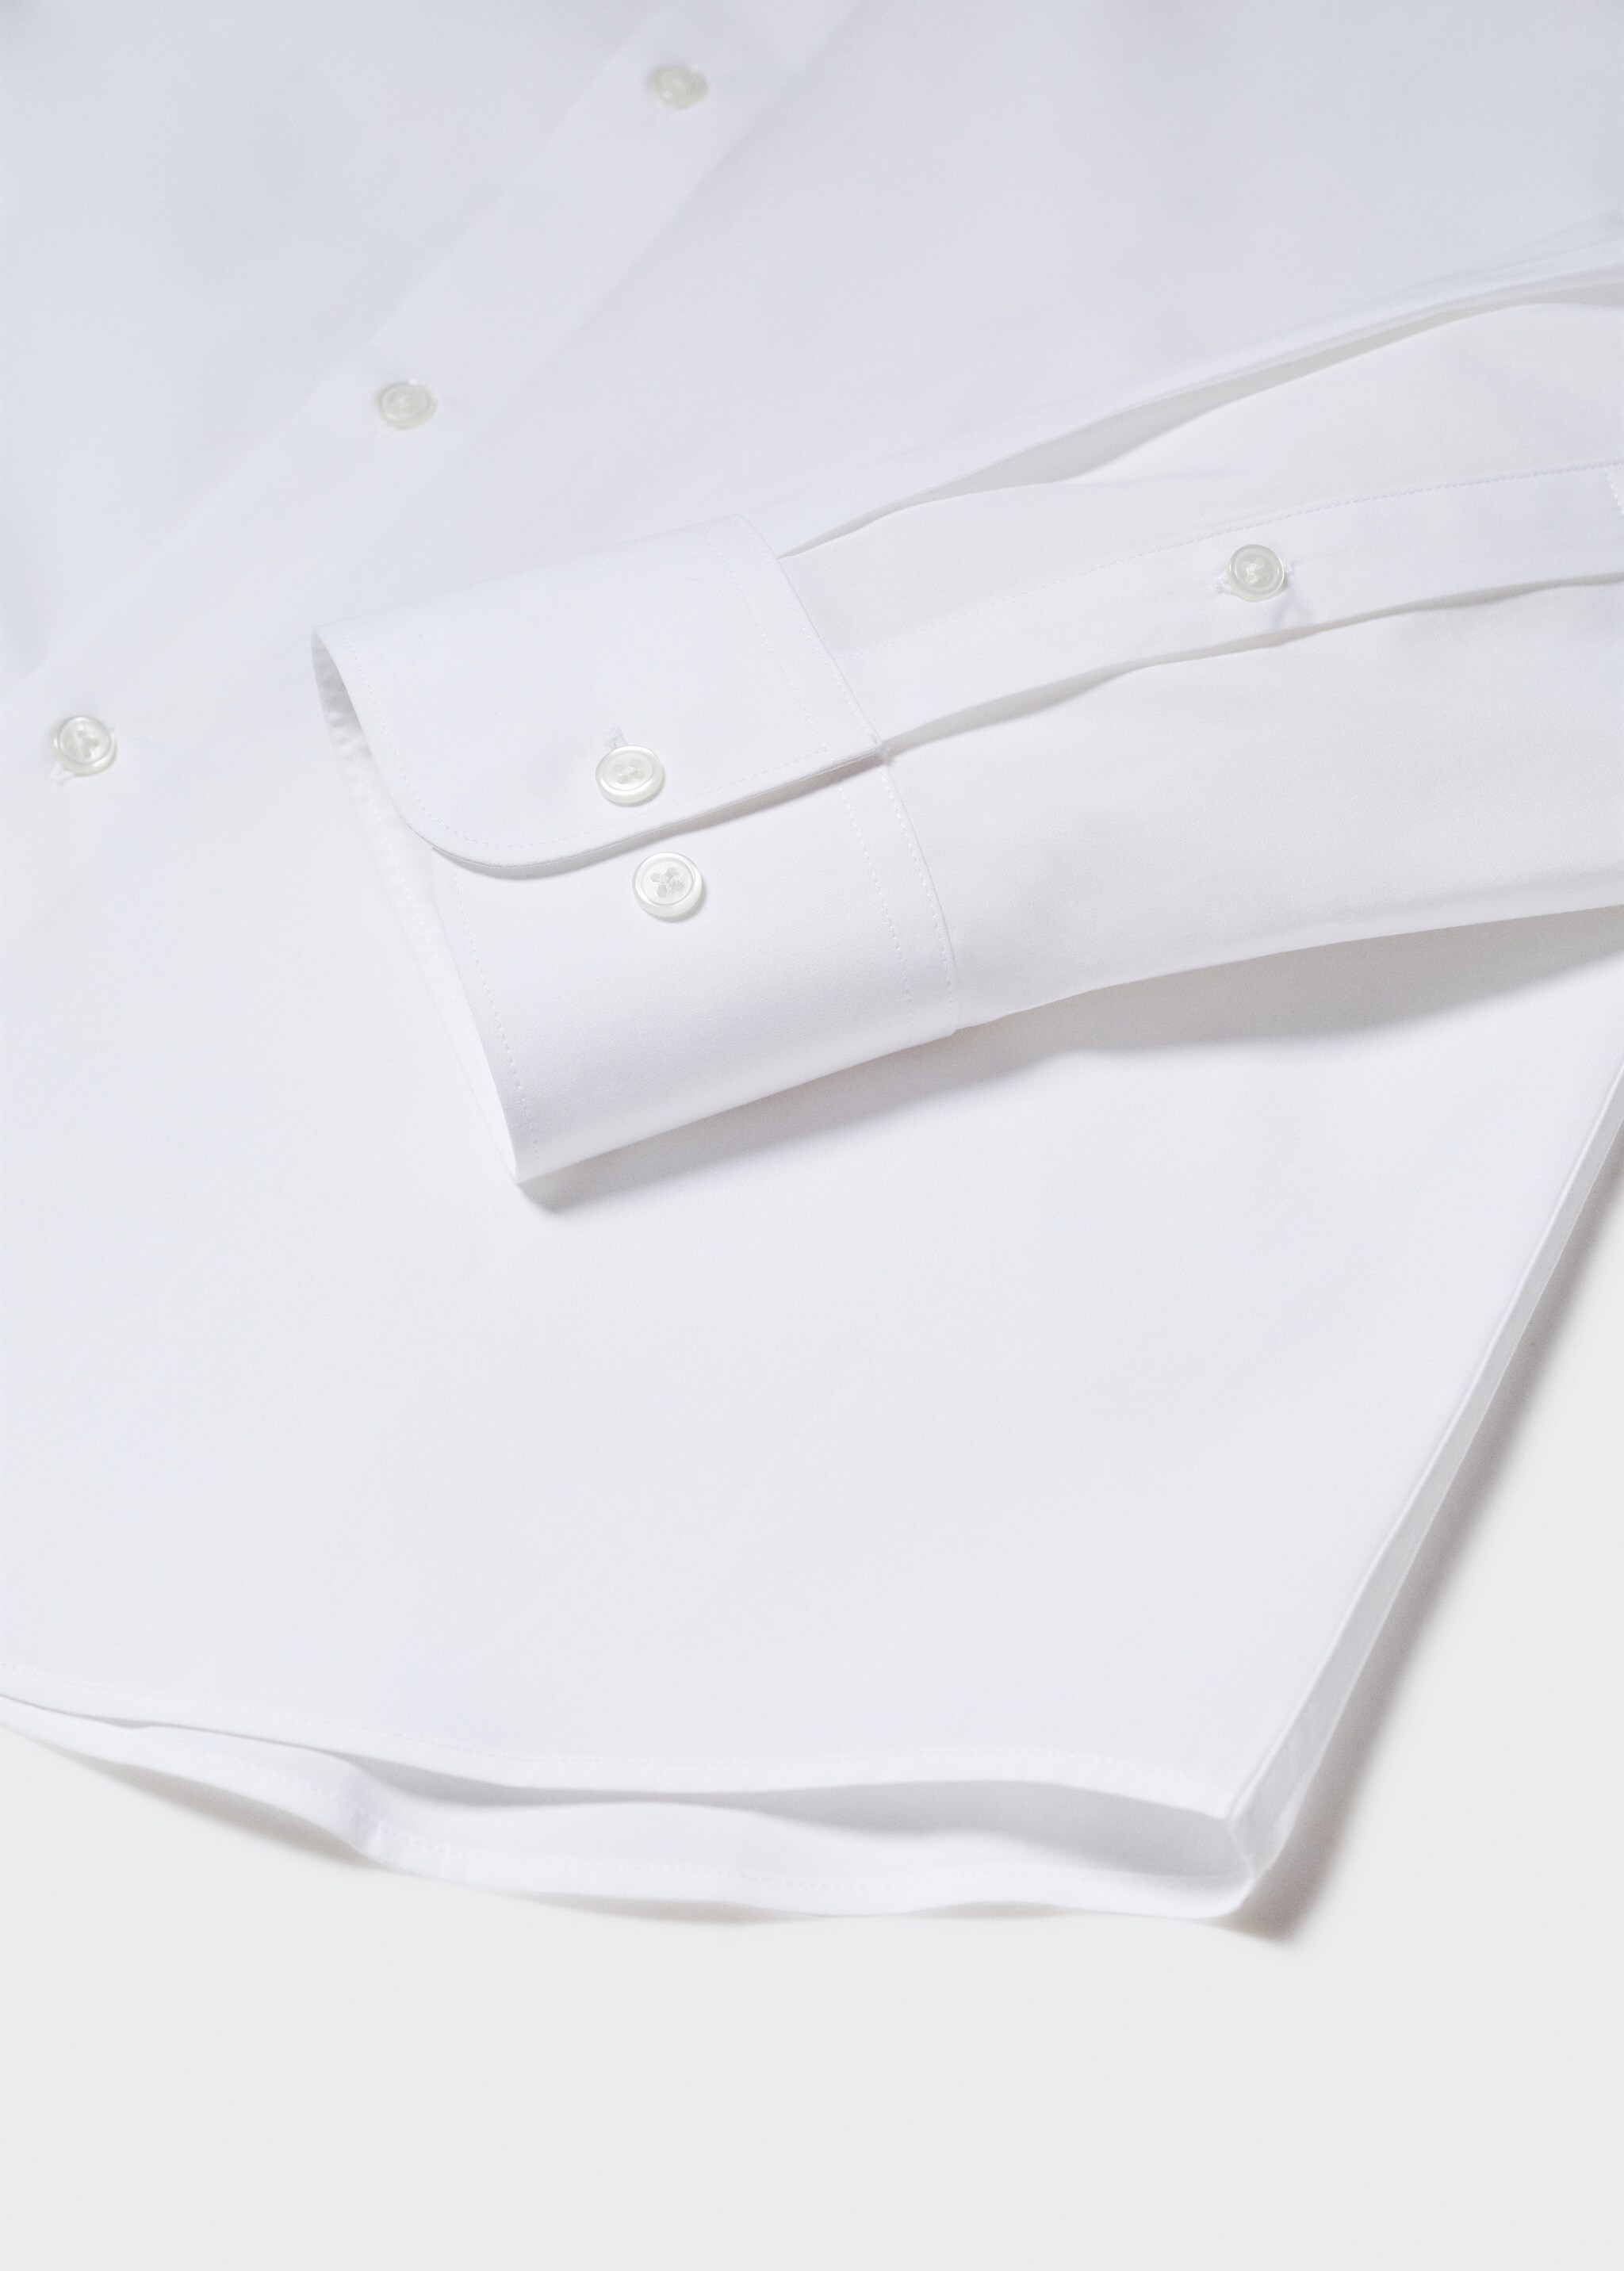 Camisa traje slim fit algodón stretch - Detalle del artículo 8